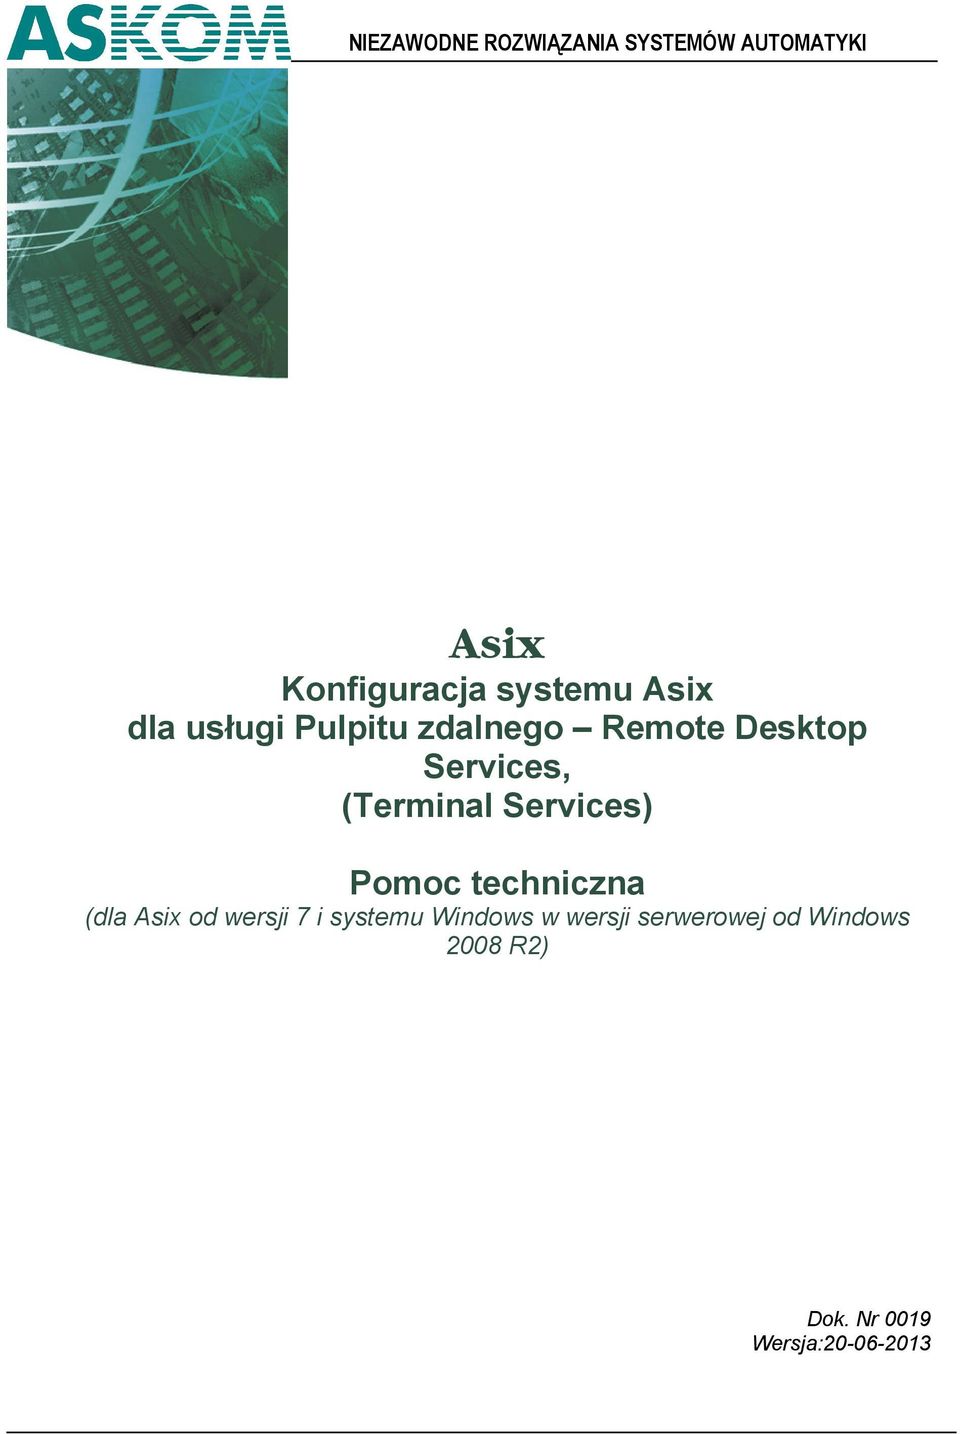 Services) Pomoc techniczna (dla Asix od wersji 7 i systemu Windows w